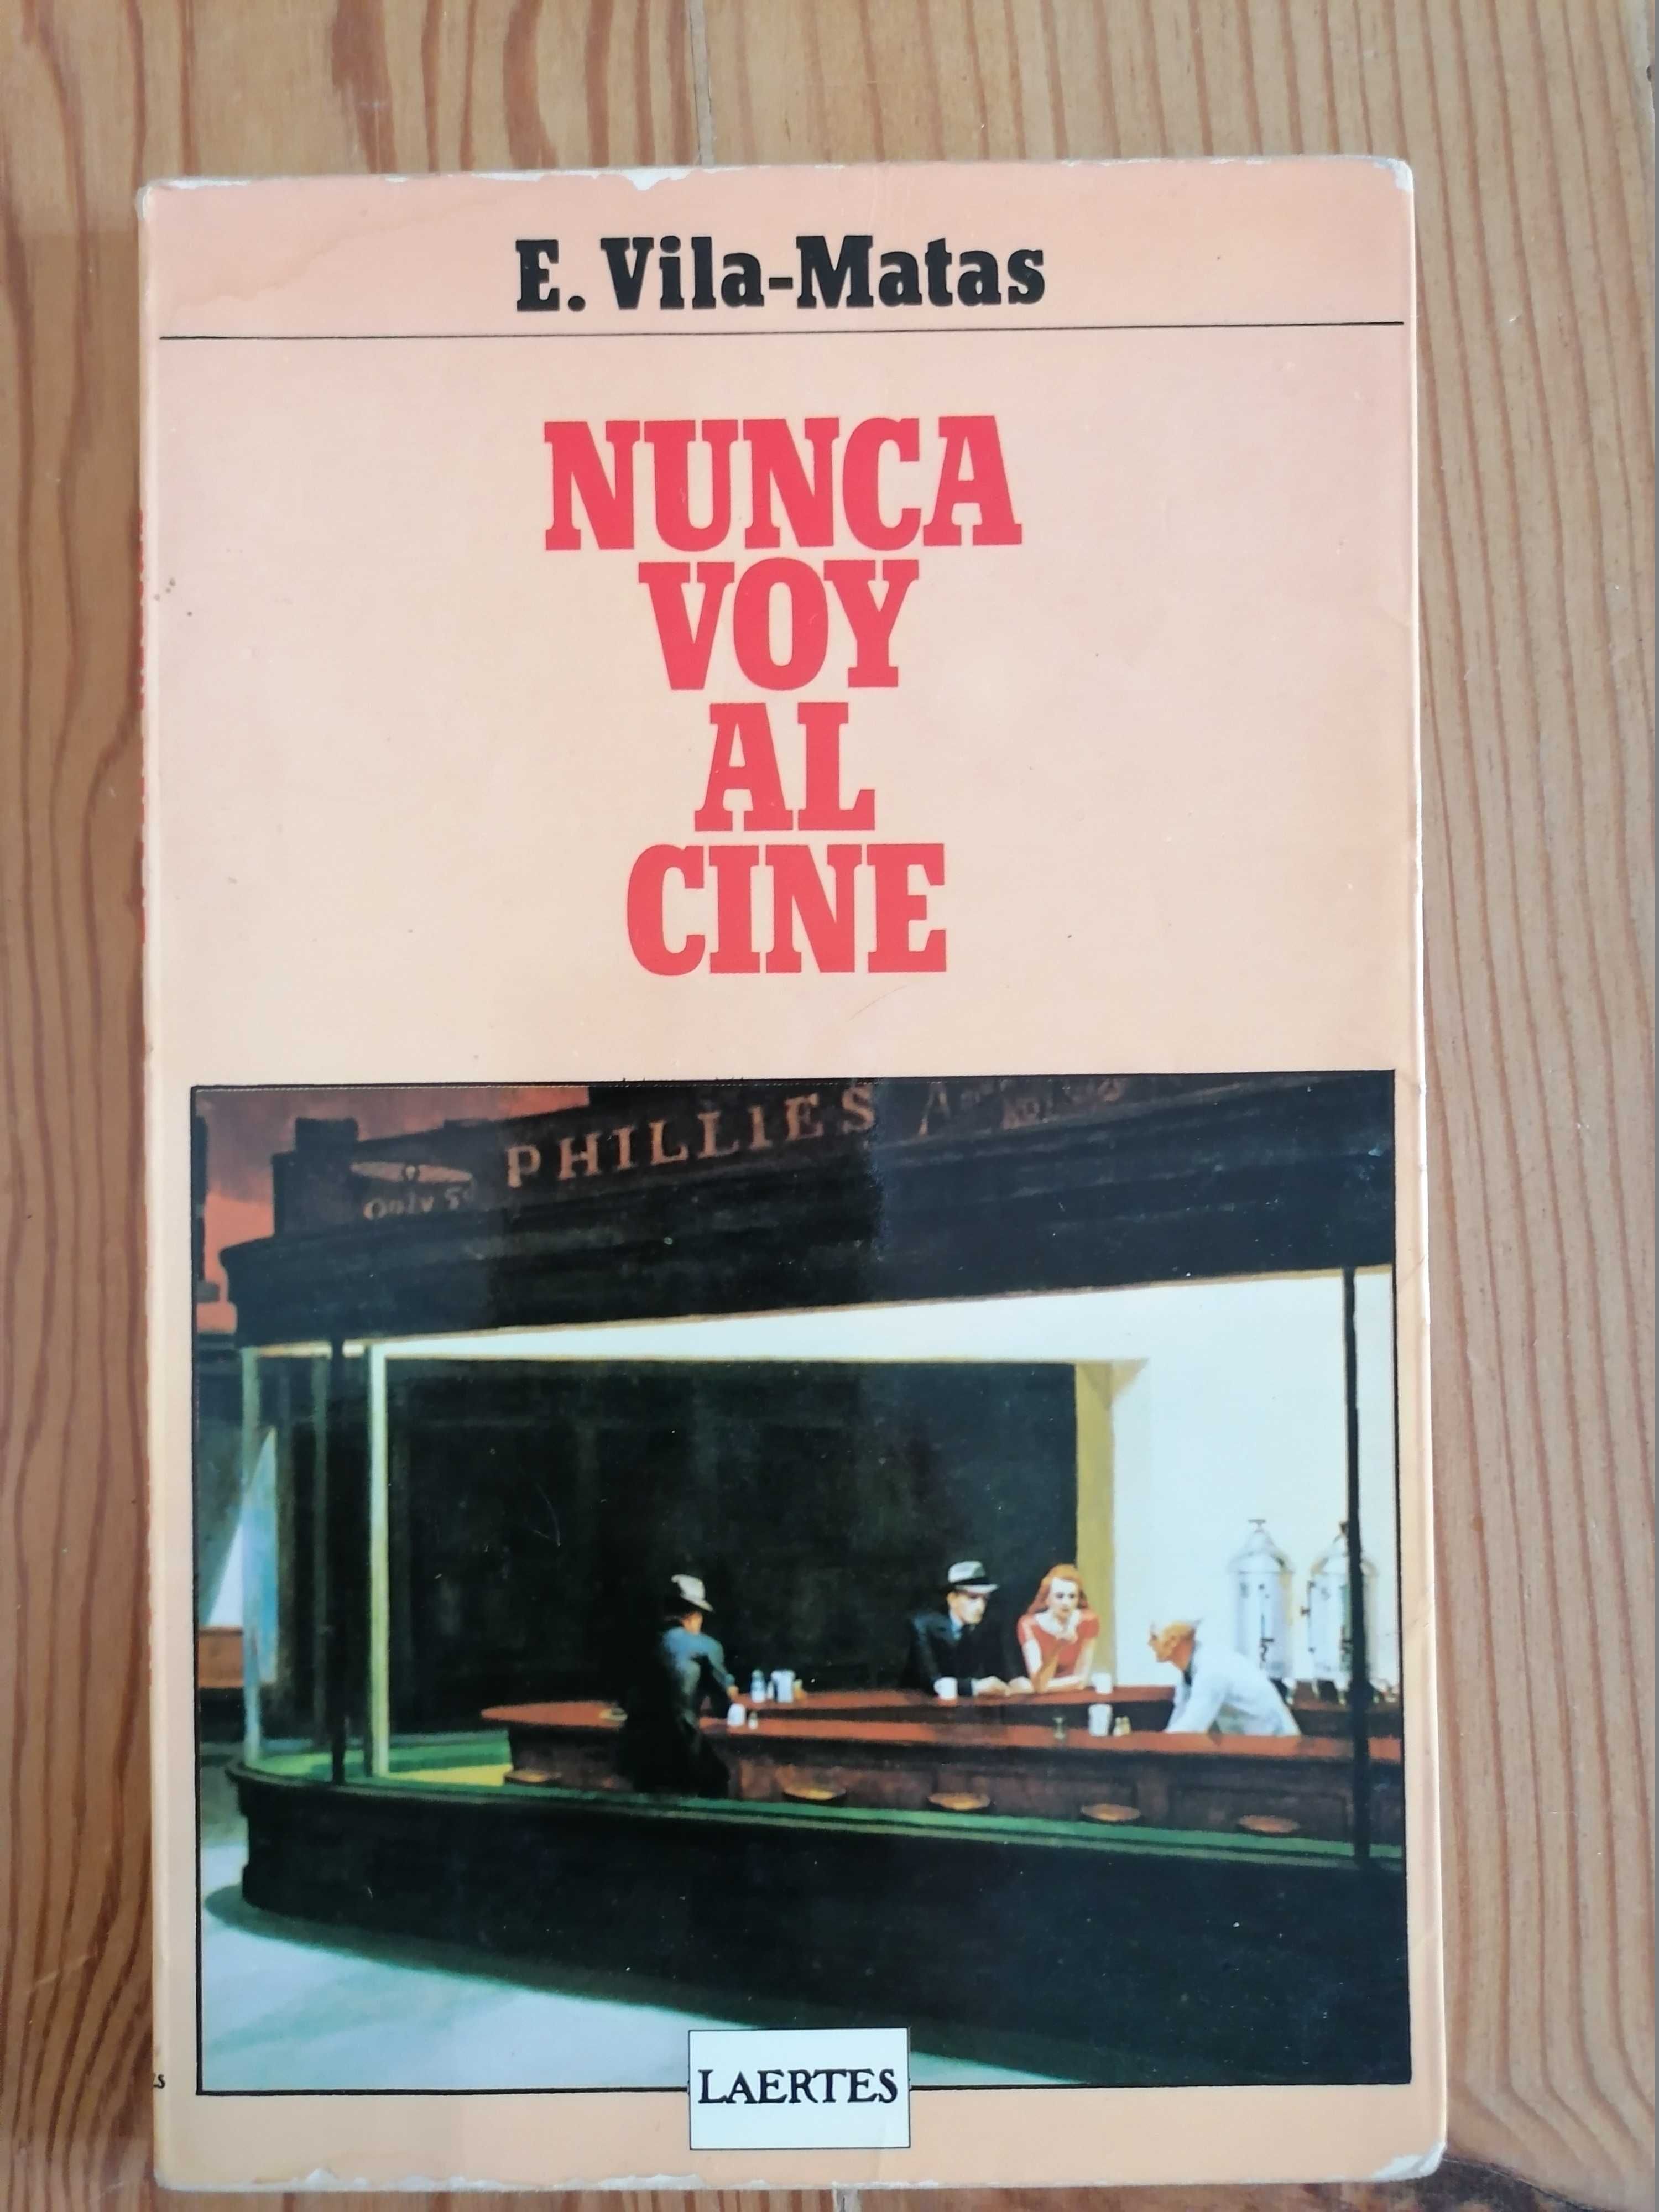 Livros em espanhol / Libros em castellano - 3 livros por 18€